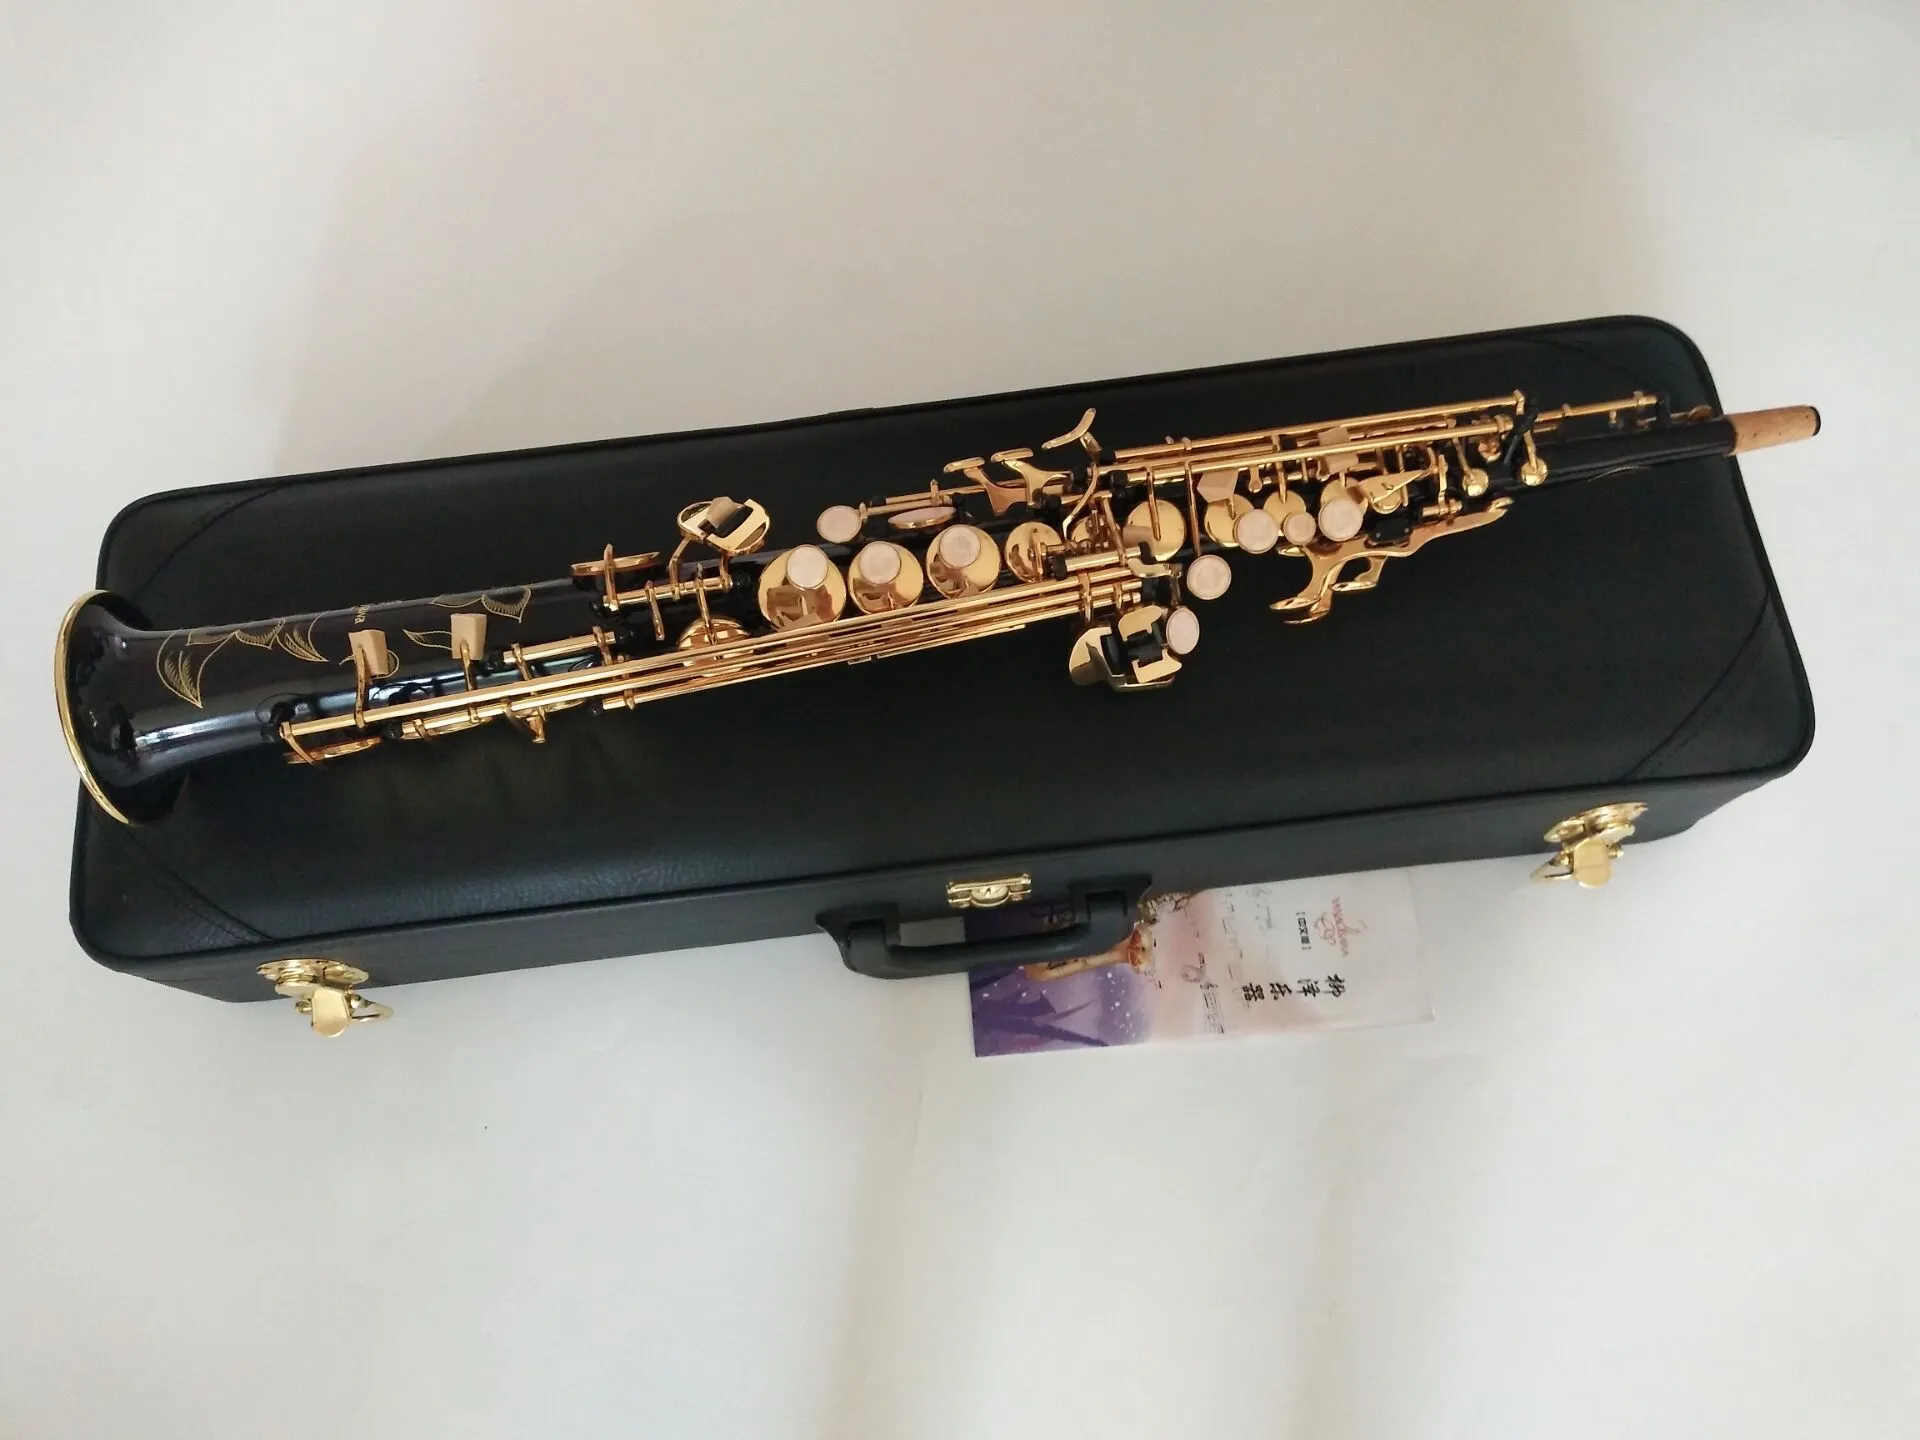 Nuovo sassofono soprano dritto nero S-901 B Tune strumenti musicali laccato oro di livello professionale gratuito con bocchino